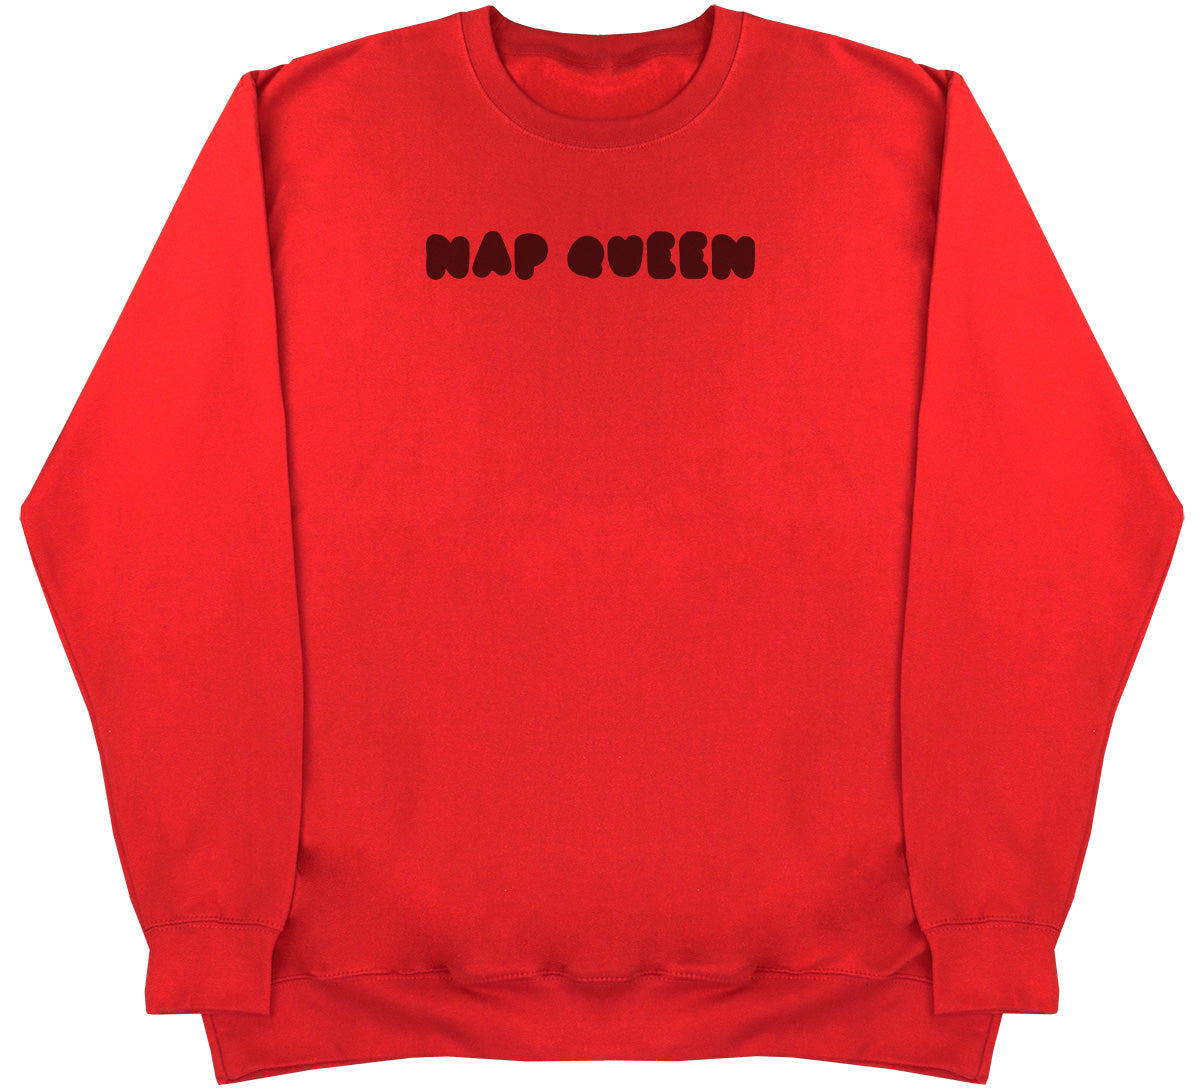 Nap Queen - Huge Oversized Comfy Original Sweater